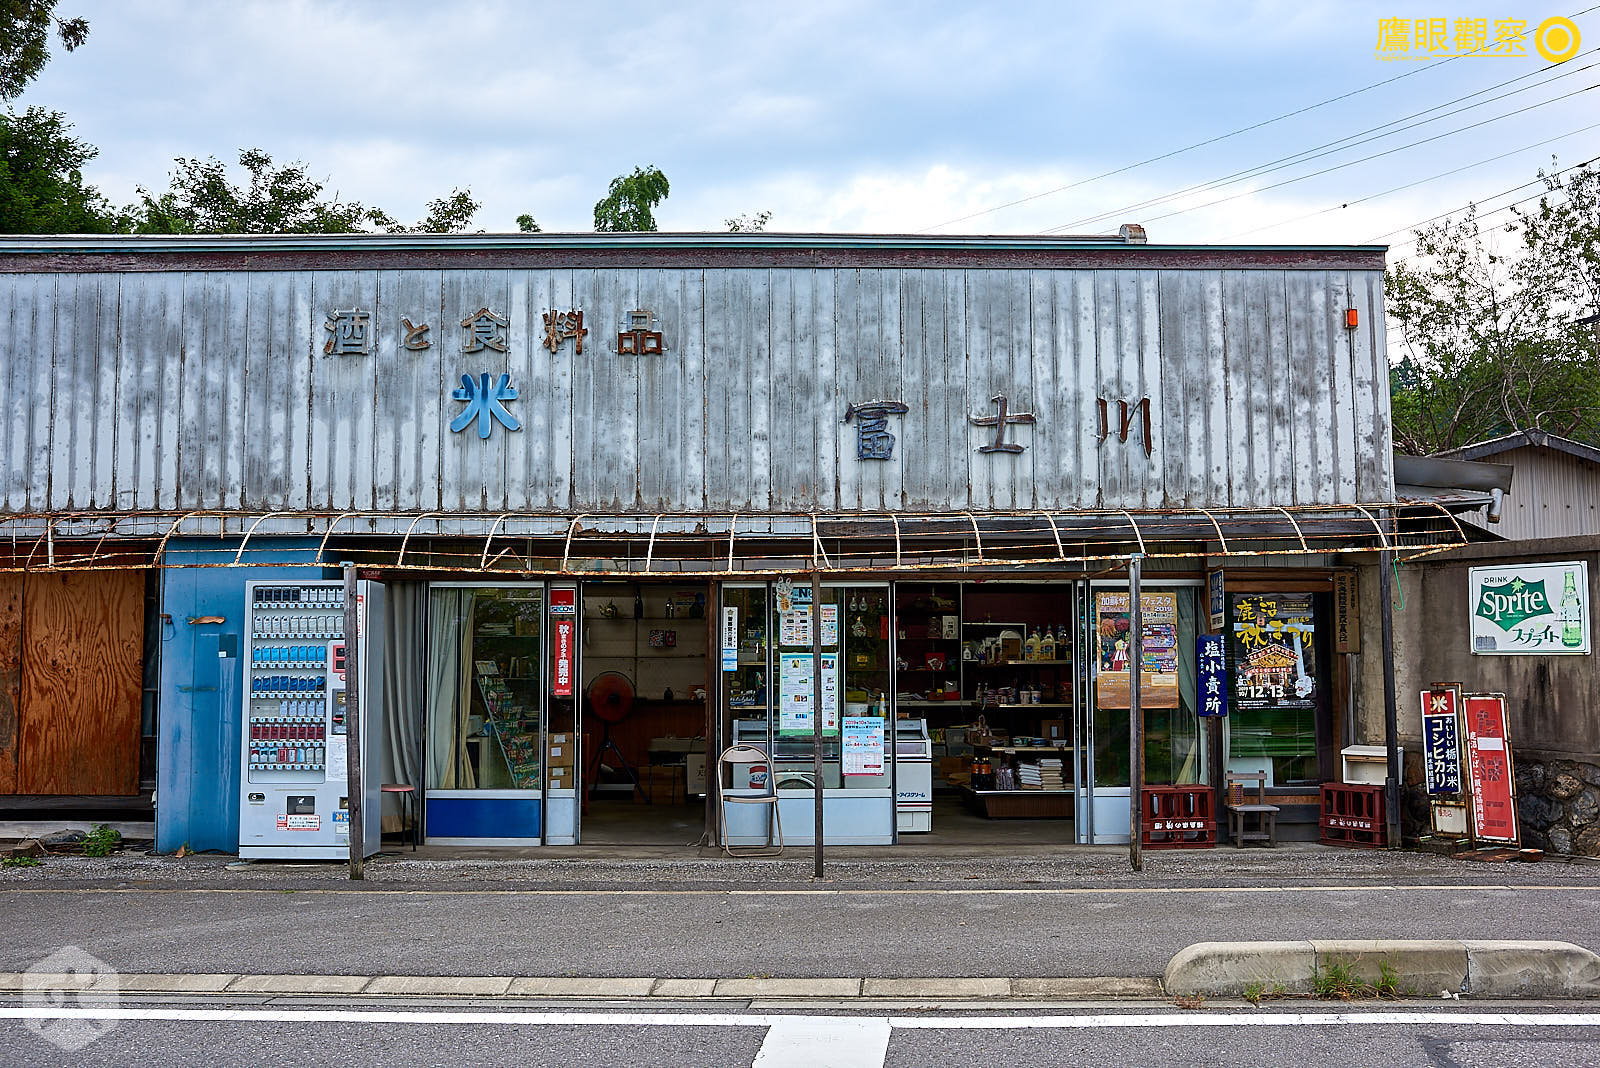 鄉下常見的傳統商店，如果會日語的話很好聊。